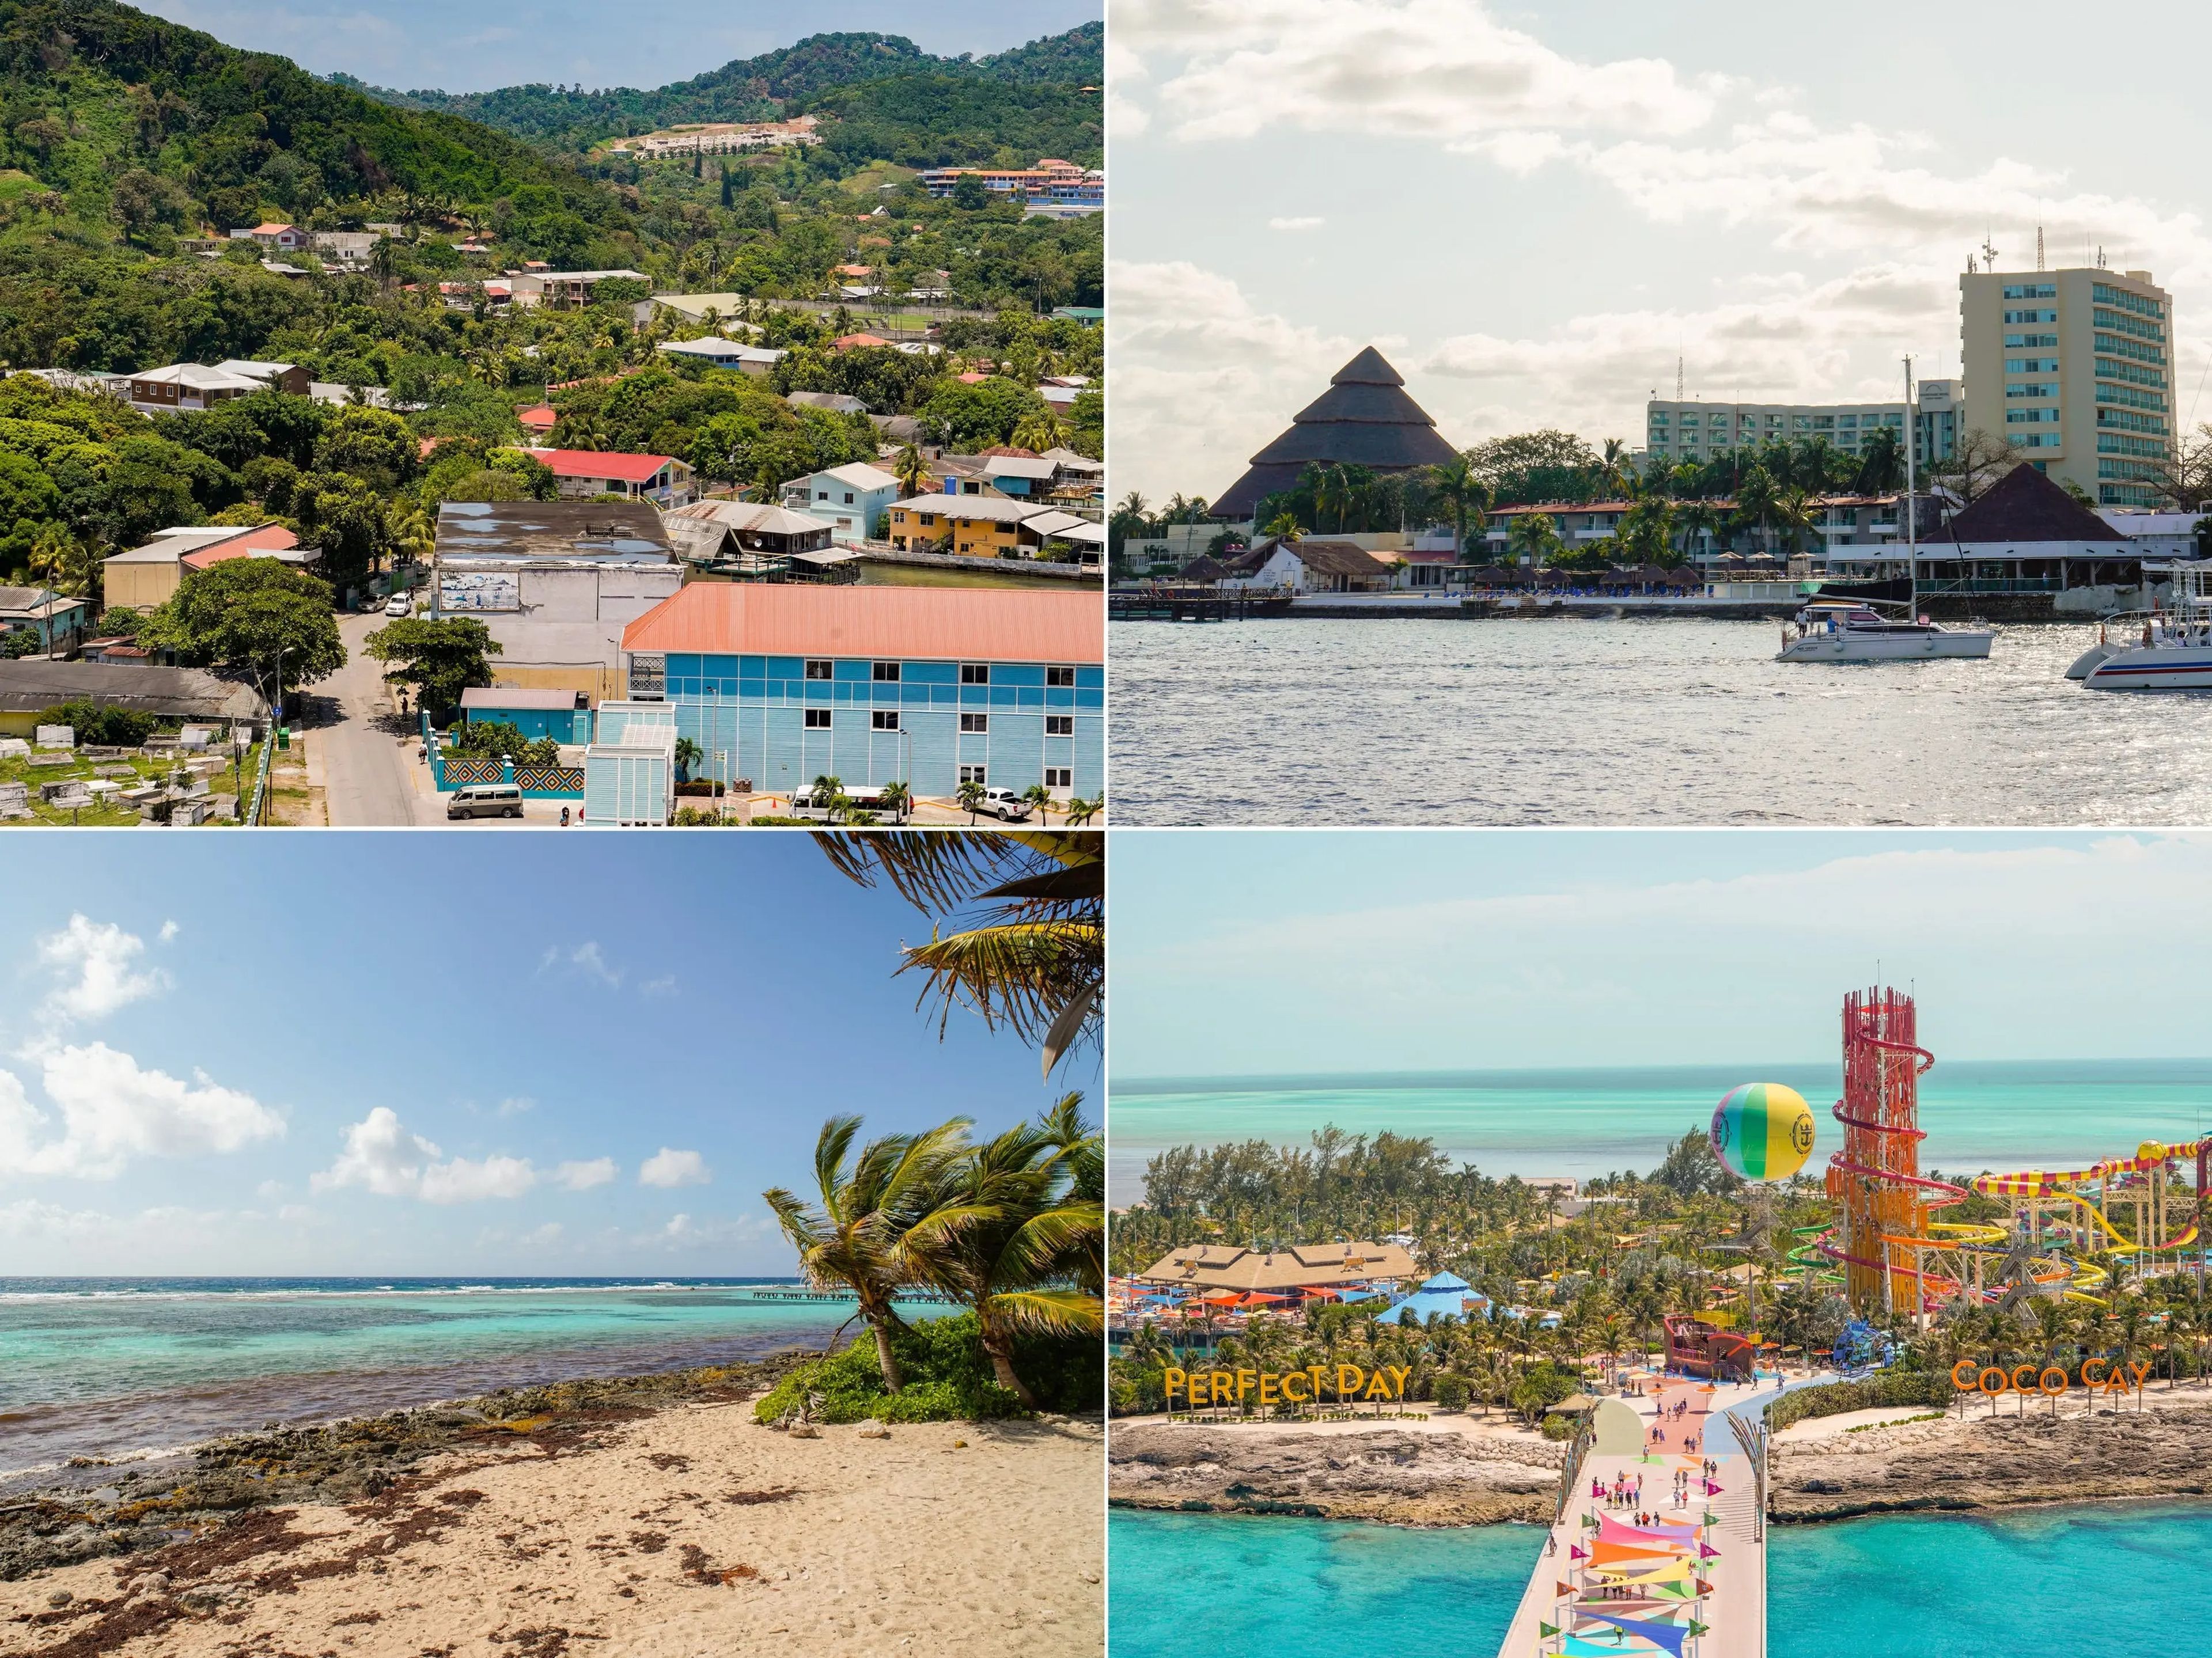 Paradas en el puerto, de arriba a abajo: Roatán, Honduras; Cozumel, México; Costa Maya, México; y la isla privada de Royal Caribbean en las Bahamas, CocoCay.